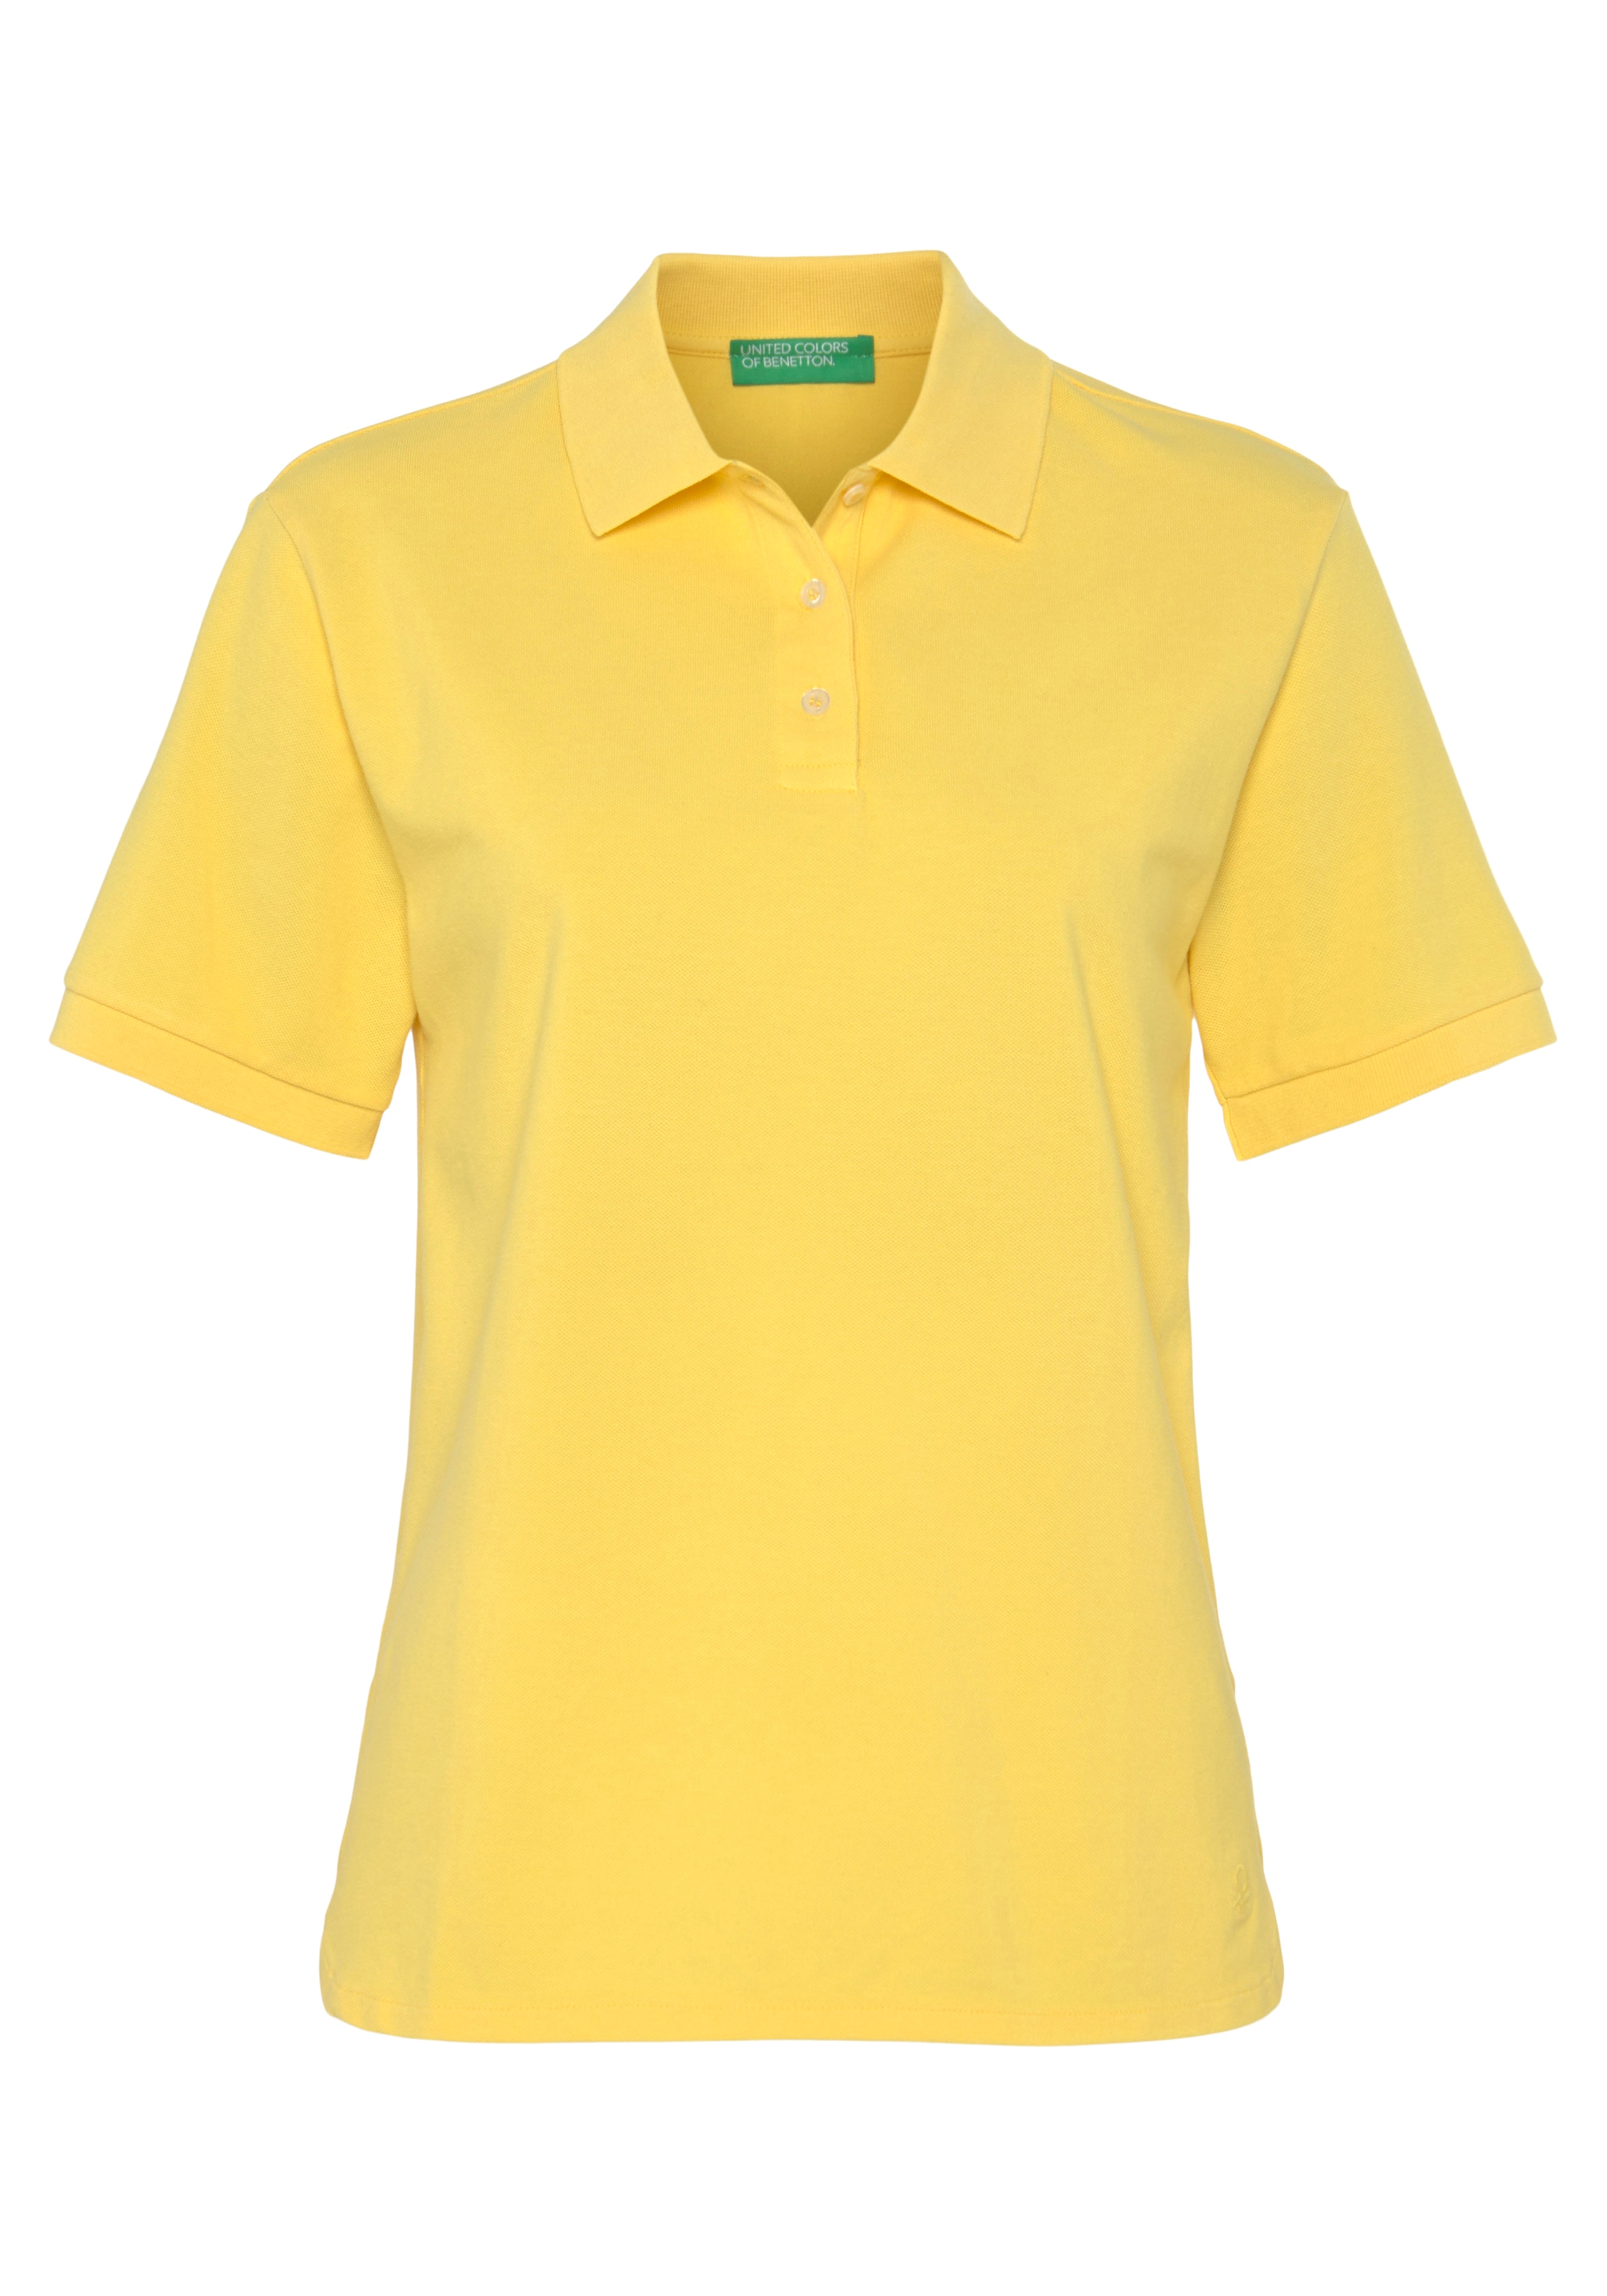 Colors kaufen perlmuttfarbenen OTTO of Poloshirt, bei Benetton United mit Knöpfen online